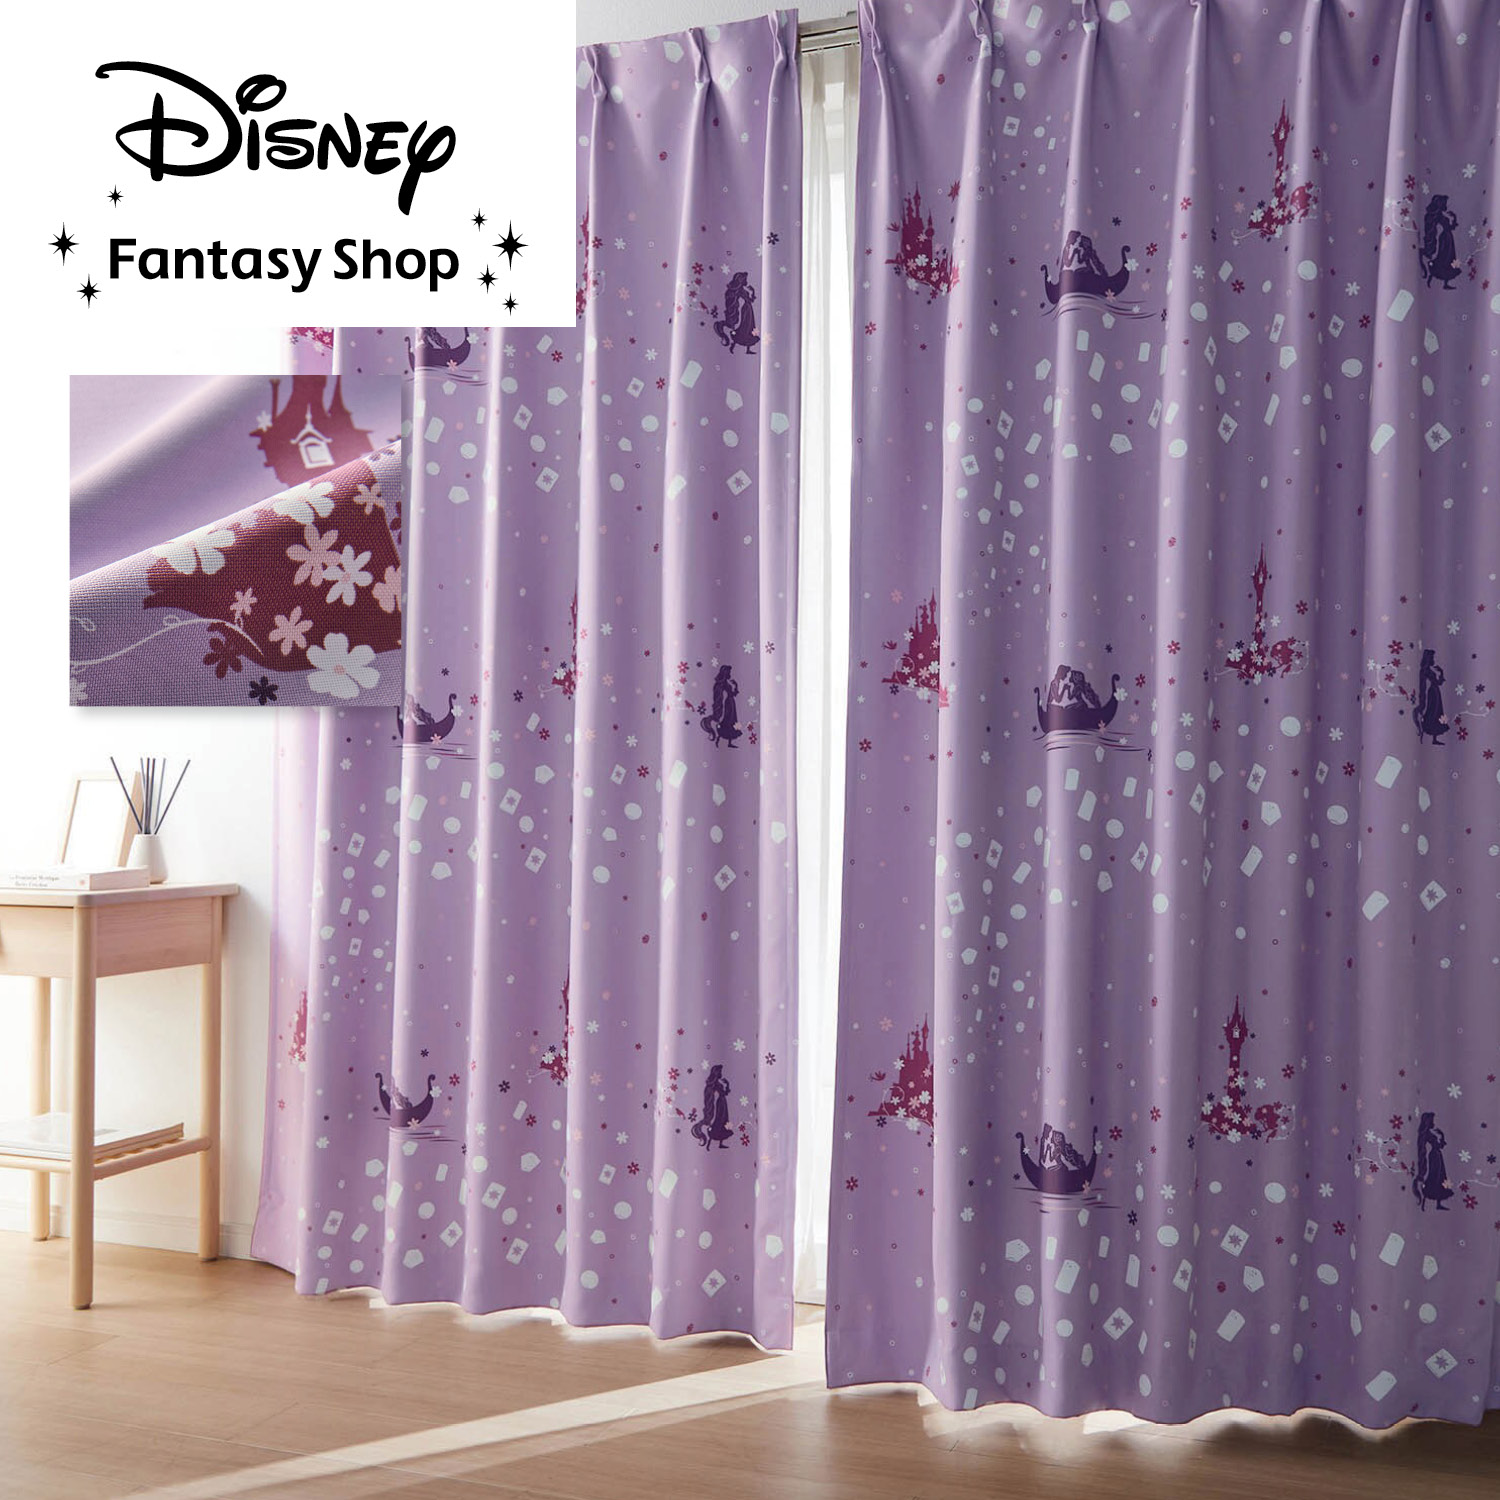 【人気商品】Disney(ディズニー) ラプンツェル 2級遮光カーテン 2枚組